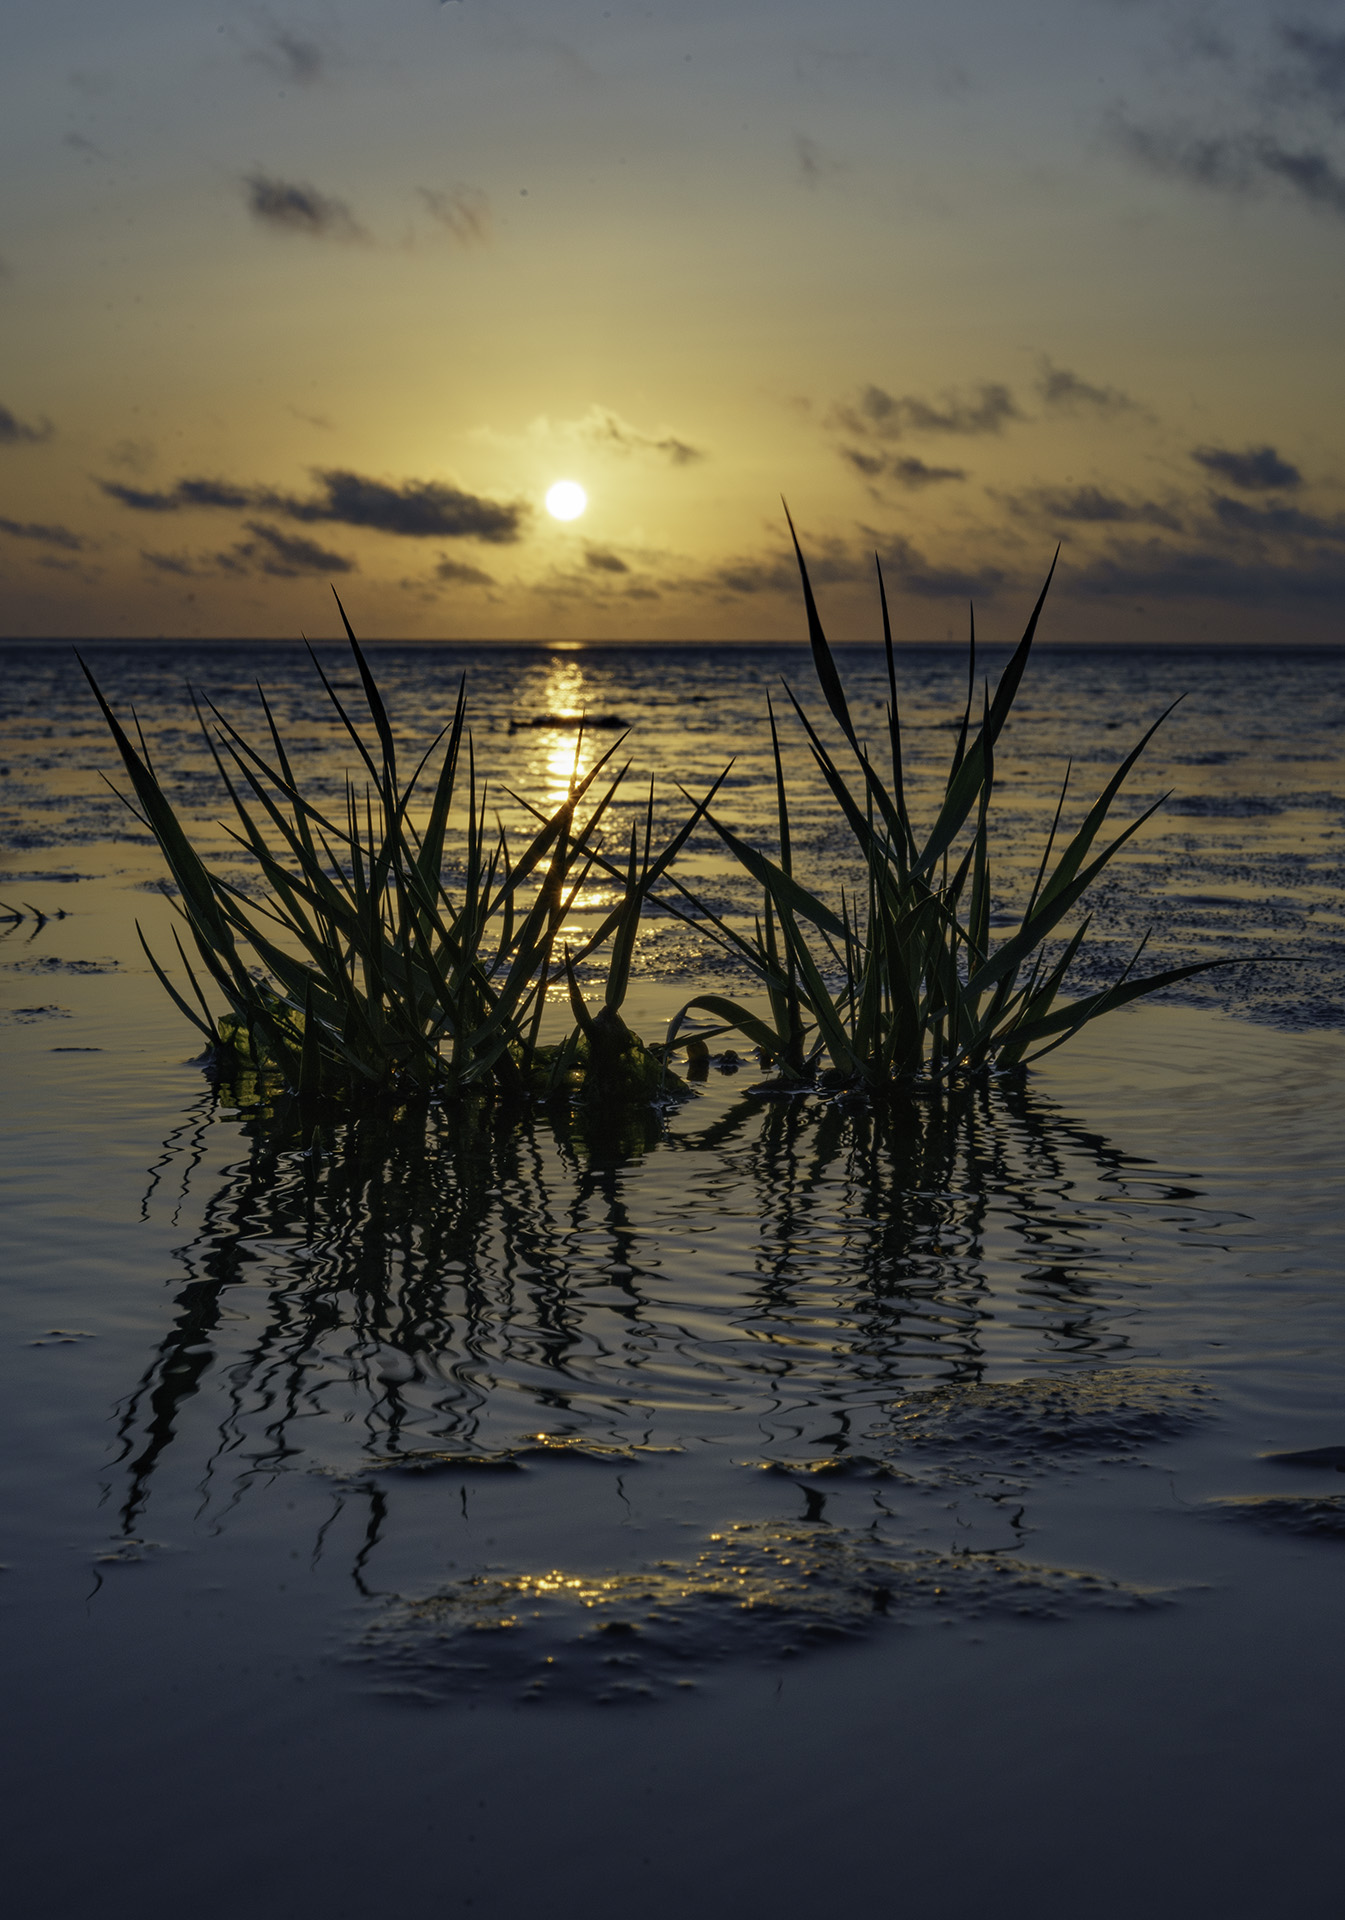 Sonnenuntergang im Wattenmeer mit Seegras im Vordergrund, Copyright Stephan Siemon © belichtet.net, Stephan Siemon